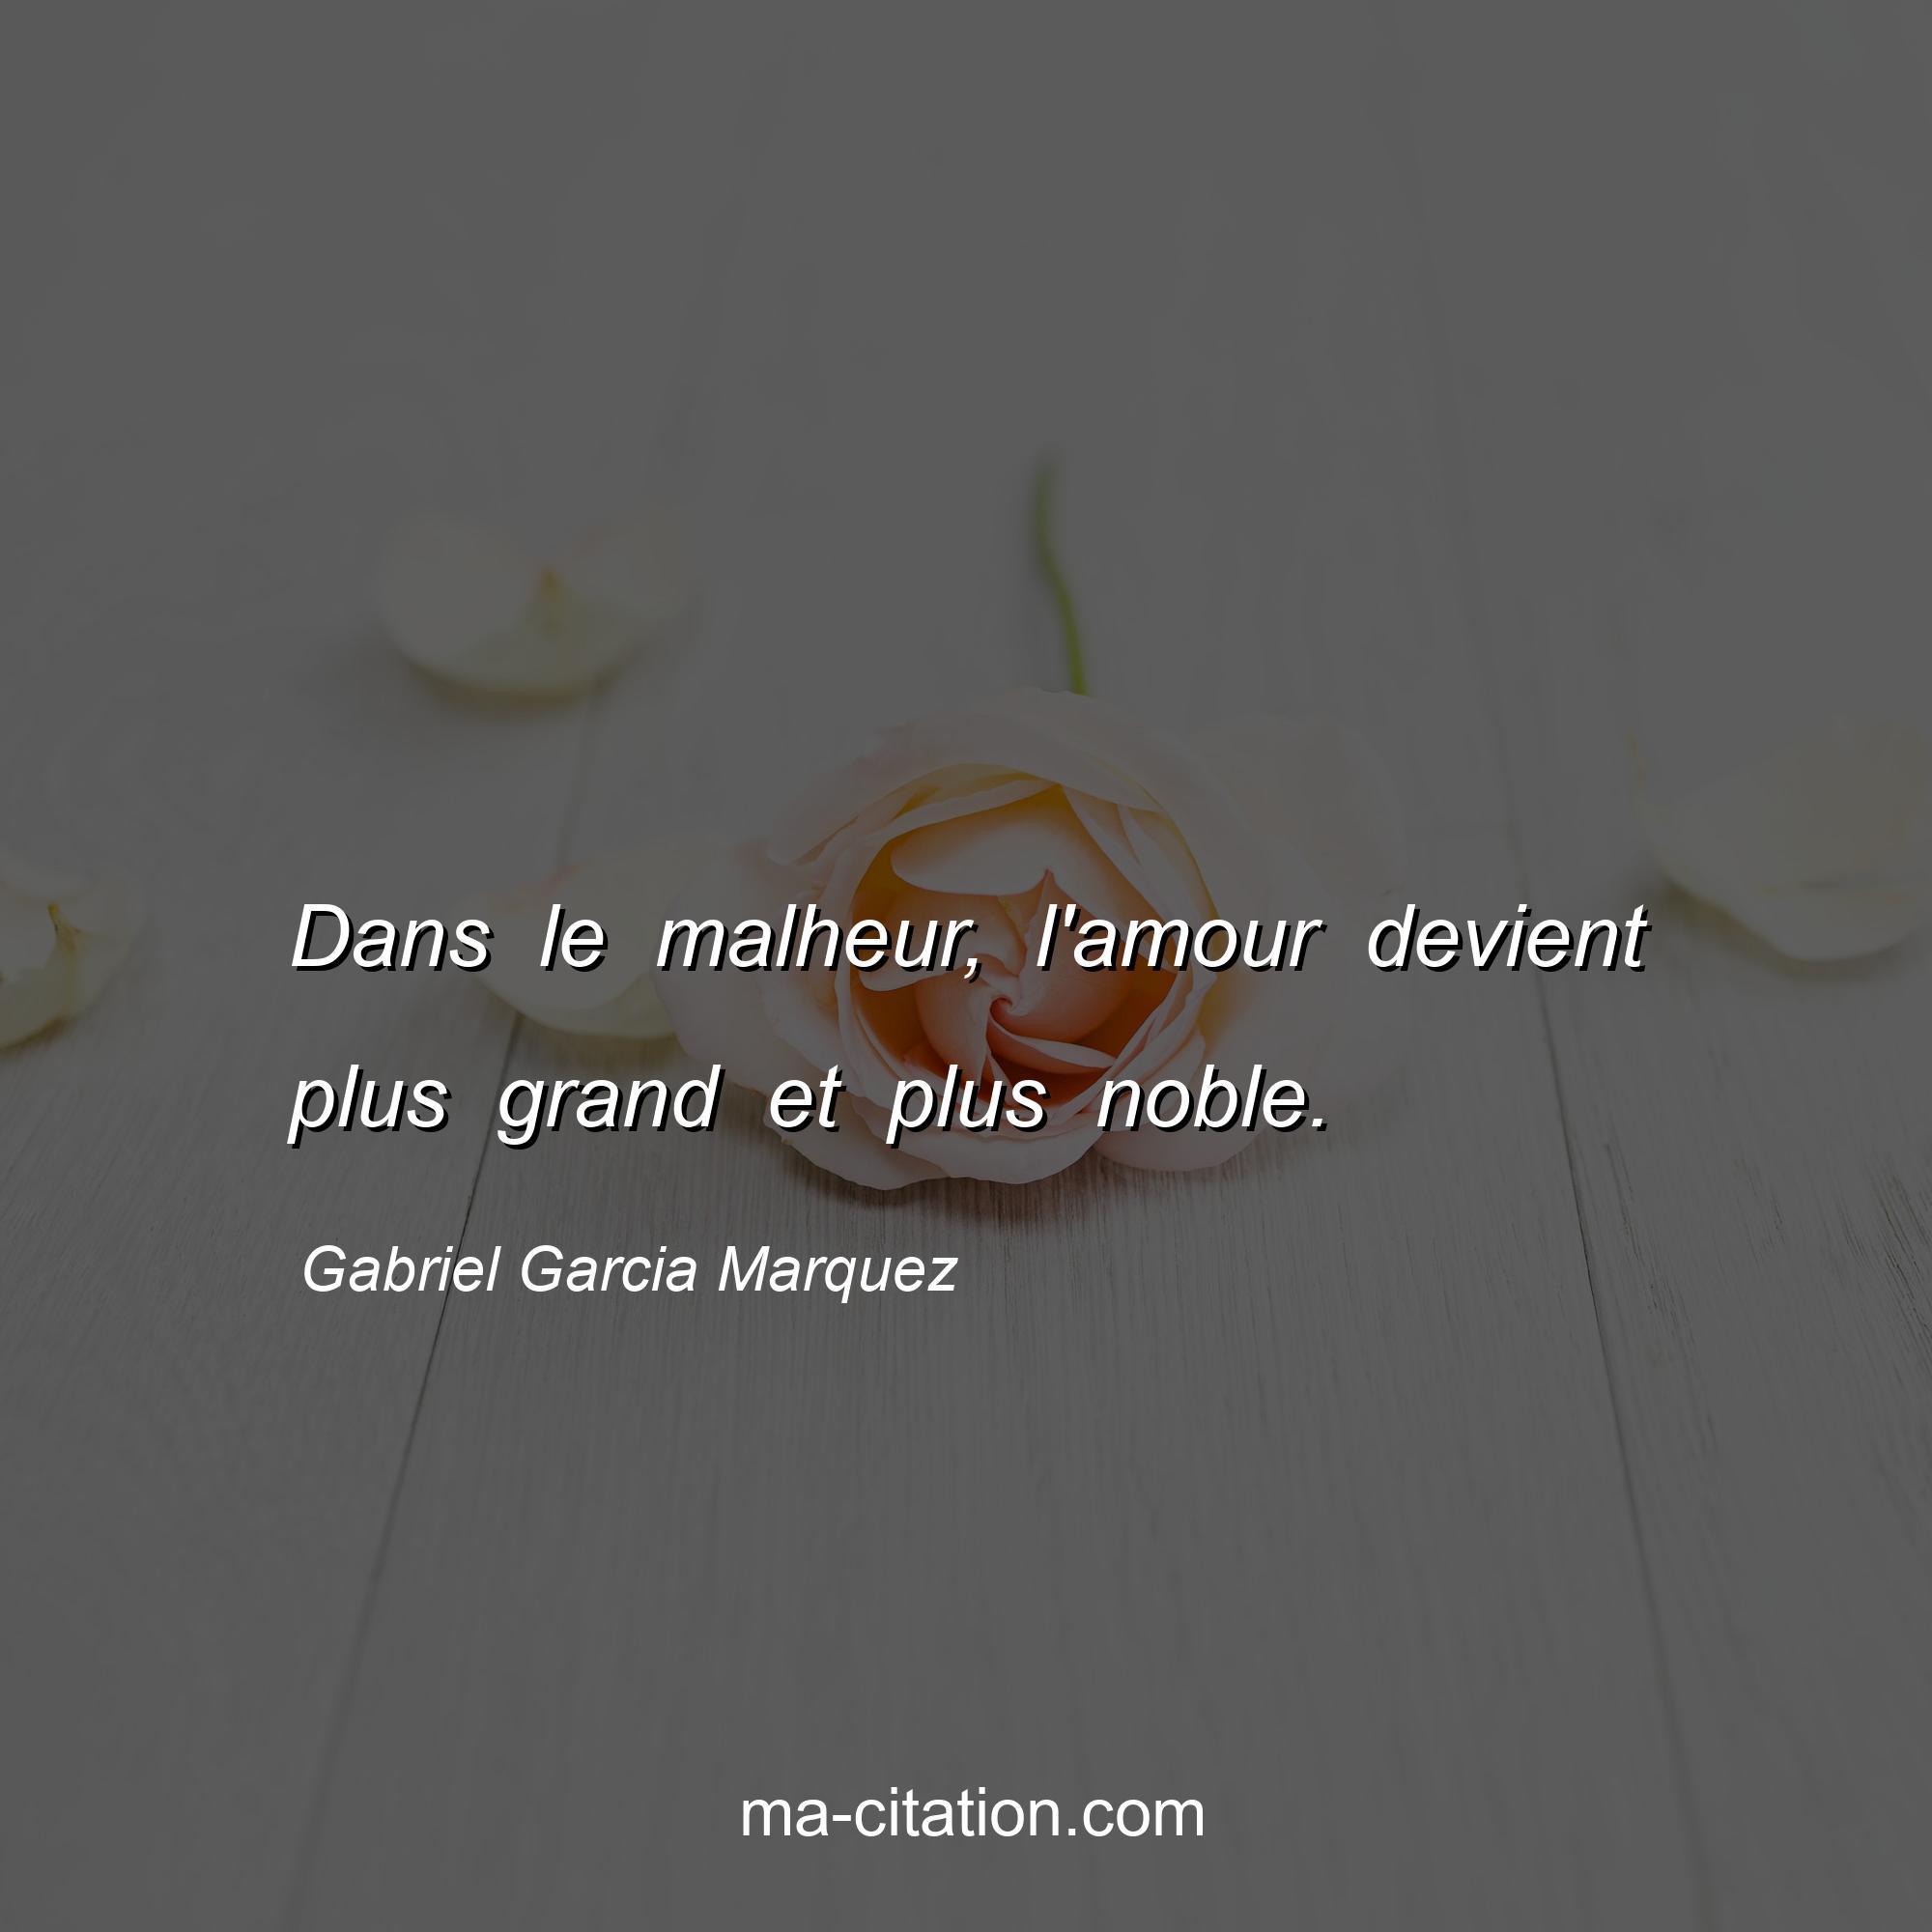 Gabriel Garcia Marquez : Dans le malheur, l'amour devient plus grand et plus noble.